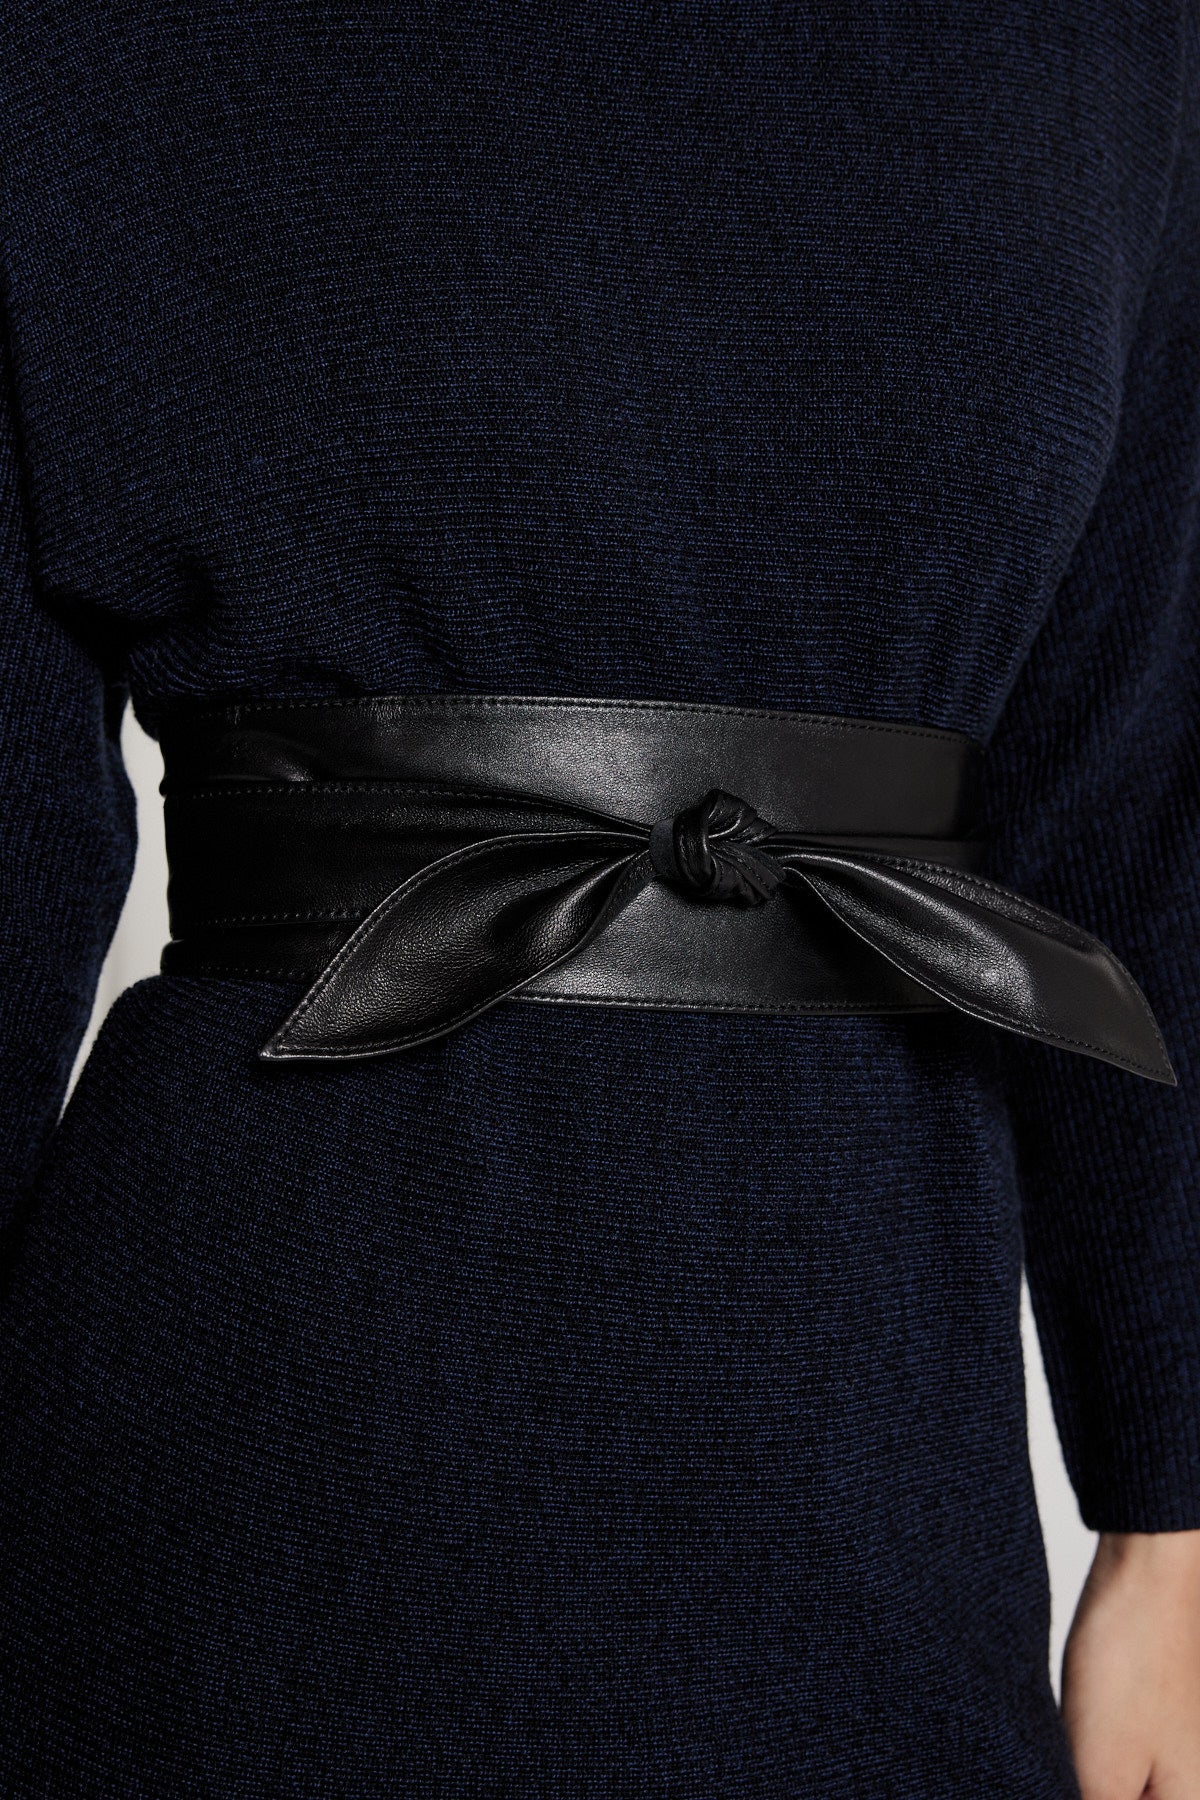 Obi Leather Belt - Black-Perri Cutten